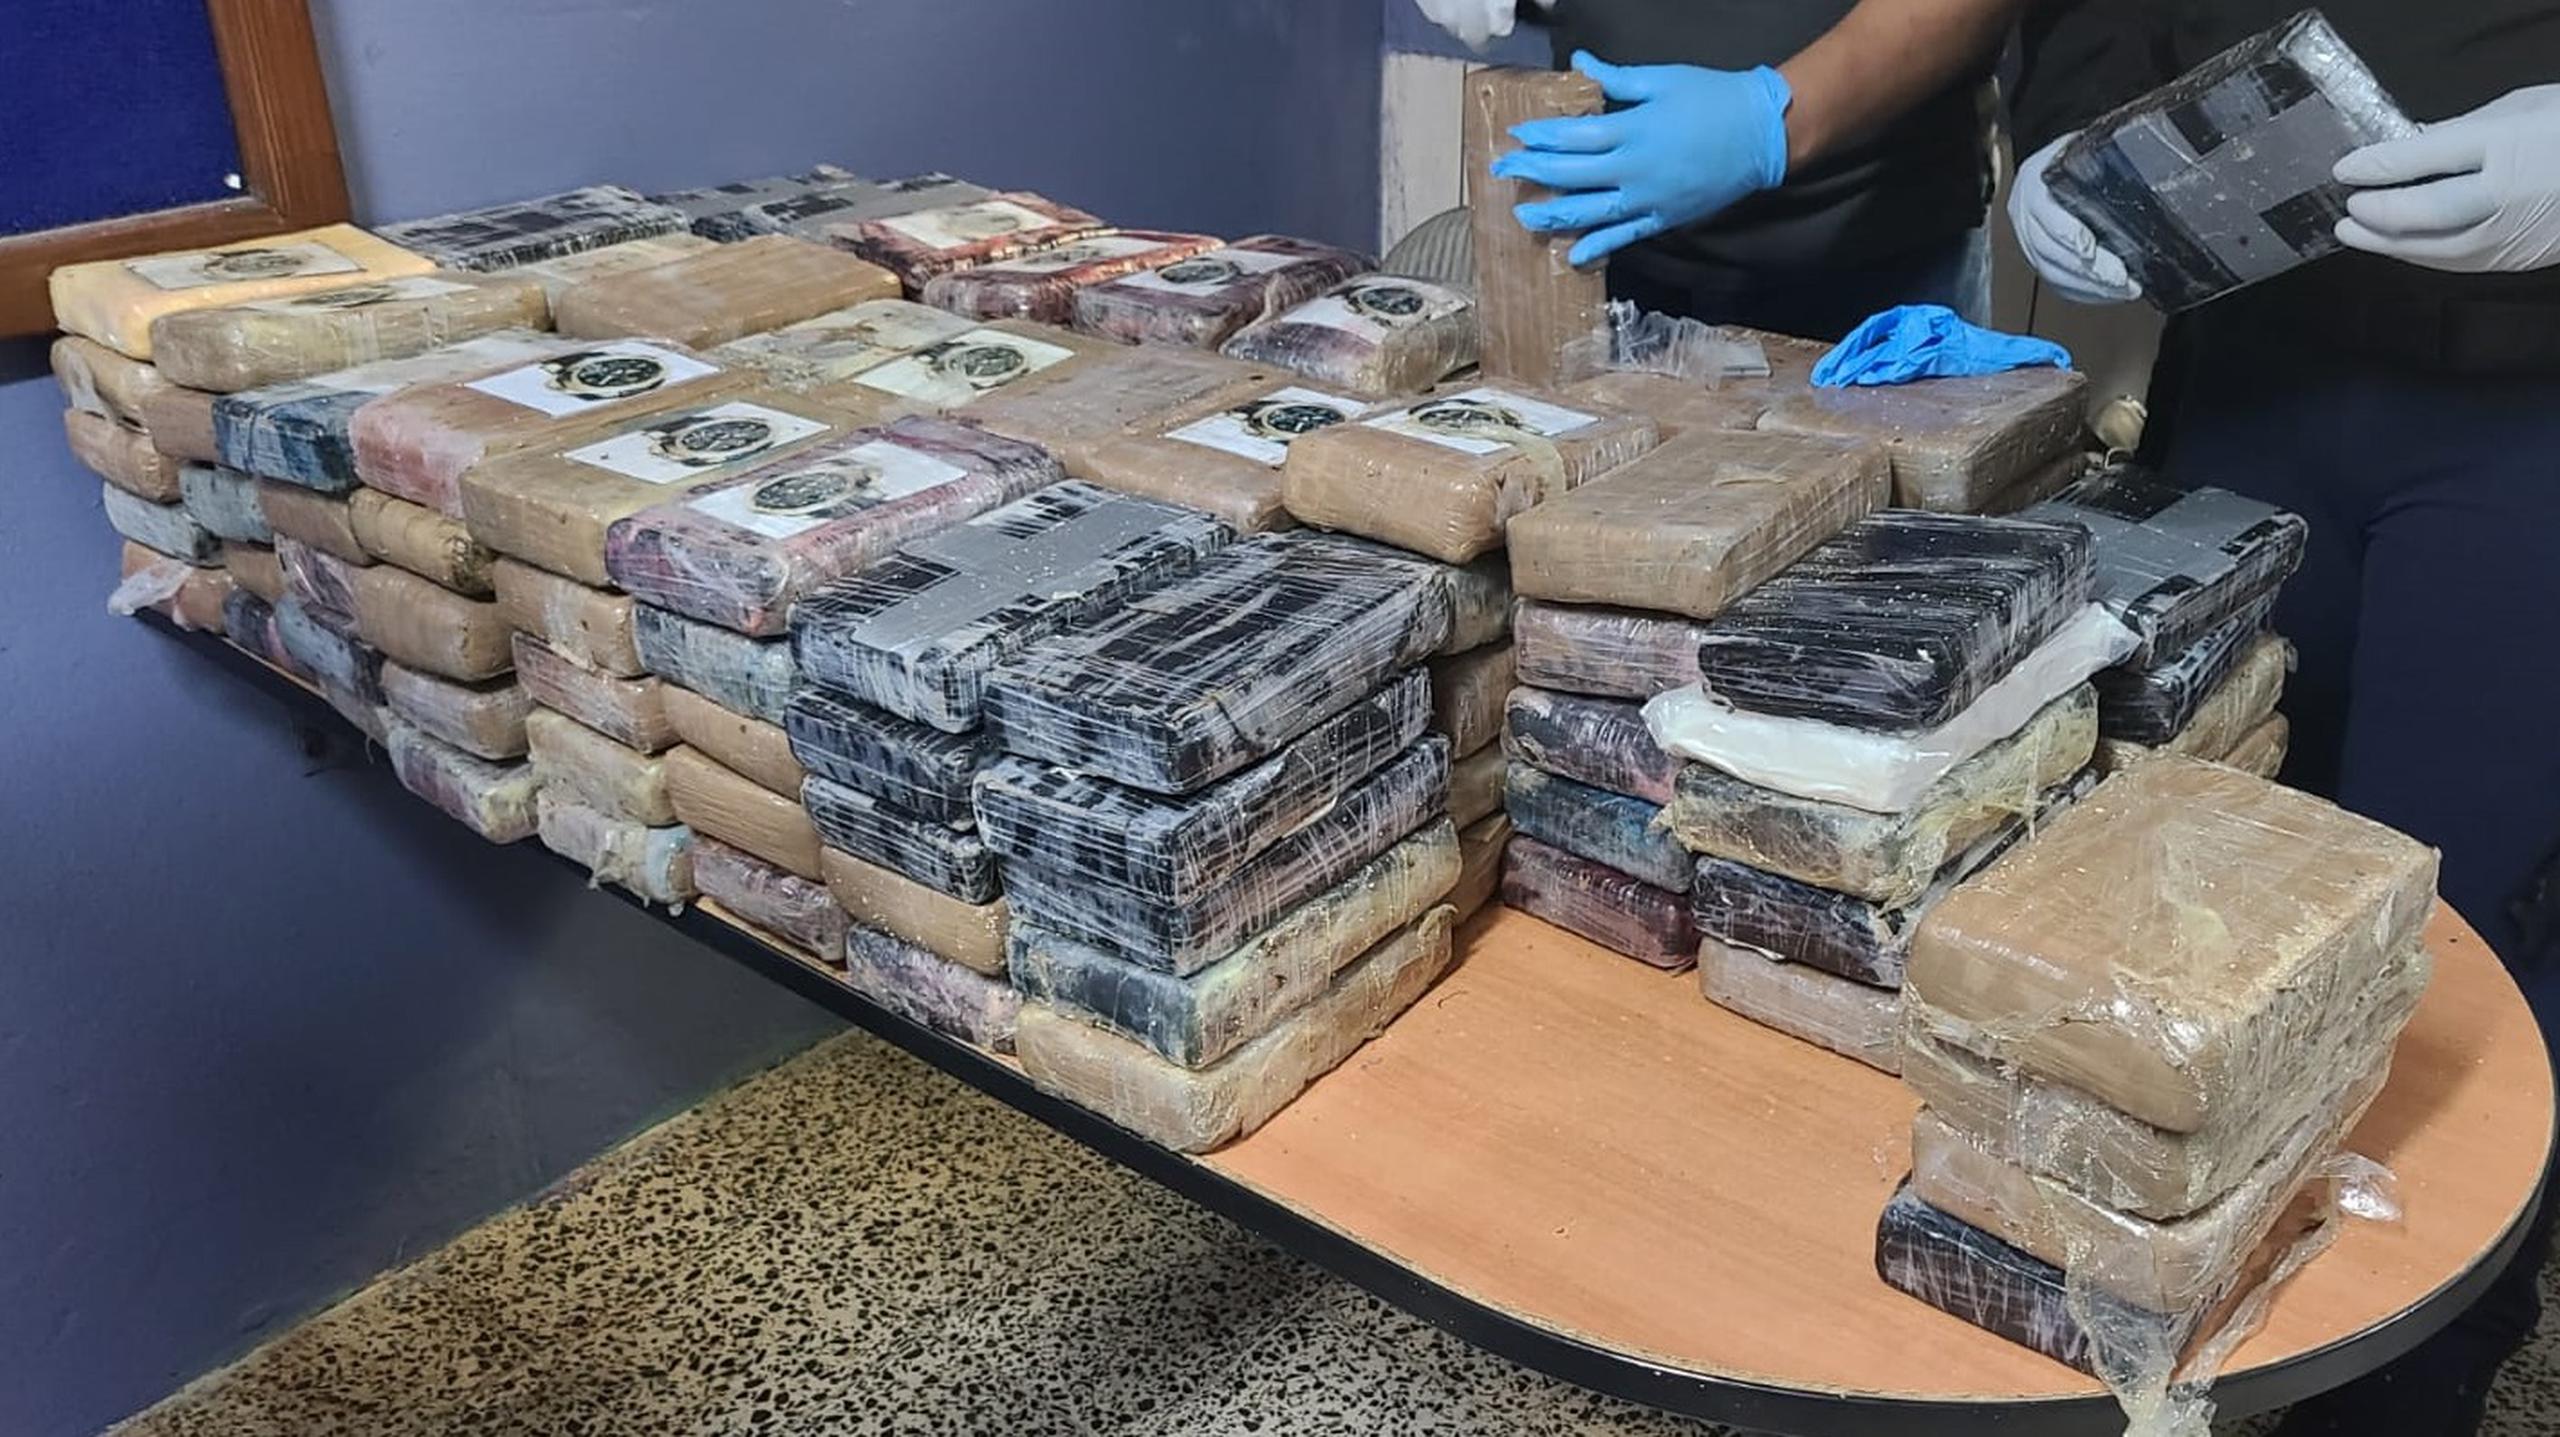 Los agentes ocuparon el cargamento millonario de cocaína durante una intervención de tránsito.